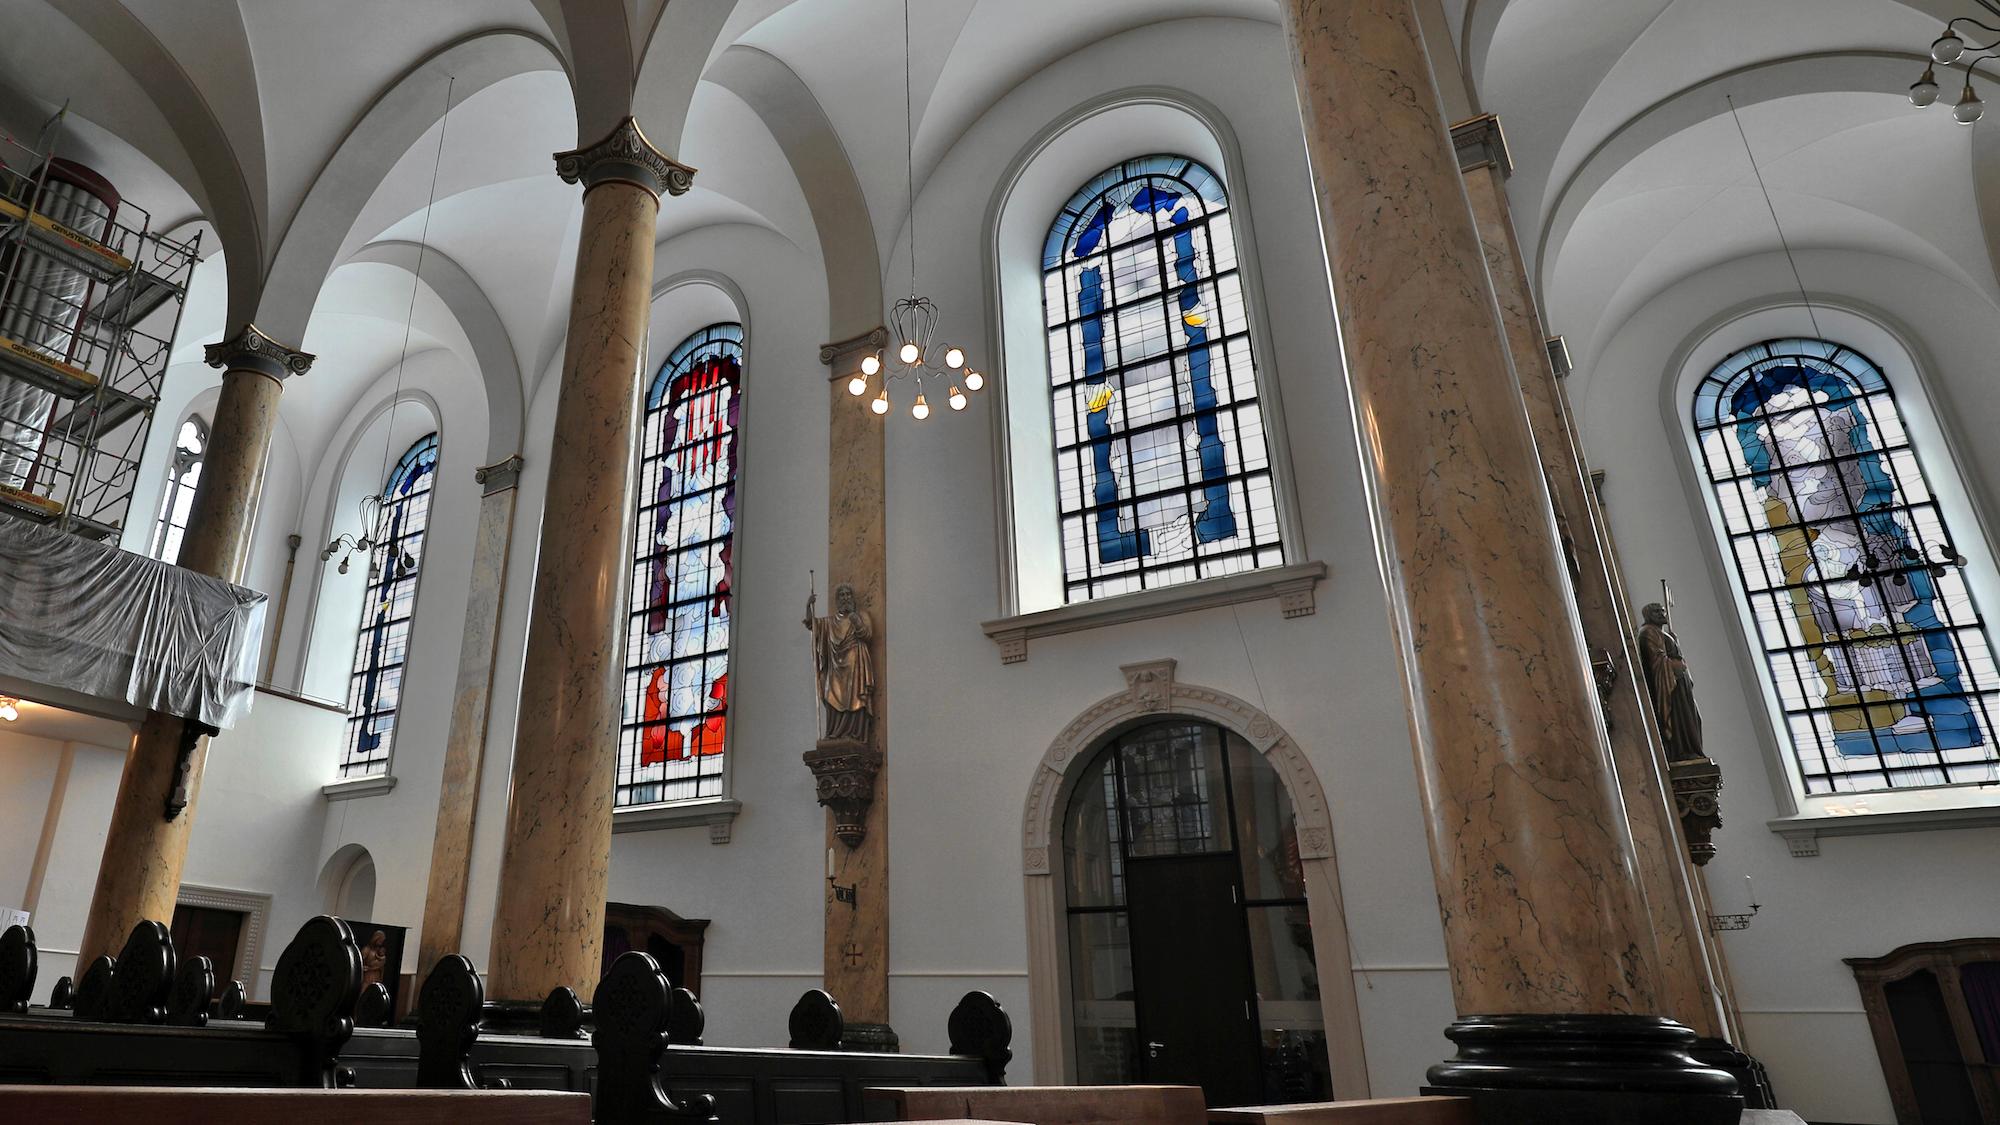 Die Geistsendung, eingerahmt von zwei freien Kompositionen. Insgesamt 16 Glasfenster schuf Hubert Spierling für die Kirche St. Dionysius. Acht von ihnen stellen biblische Motive dar. (c) Dirk Jochmann